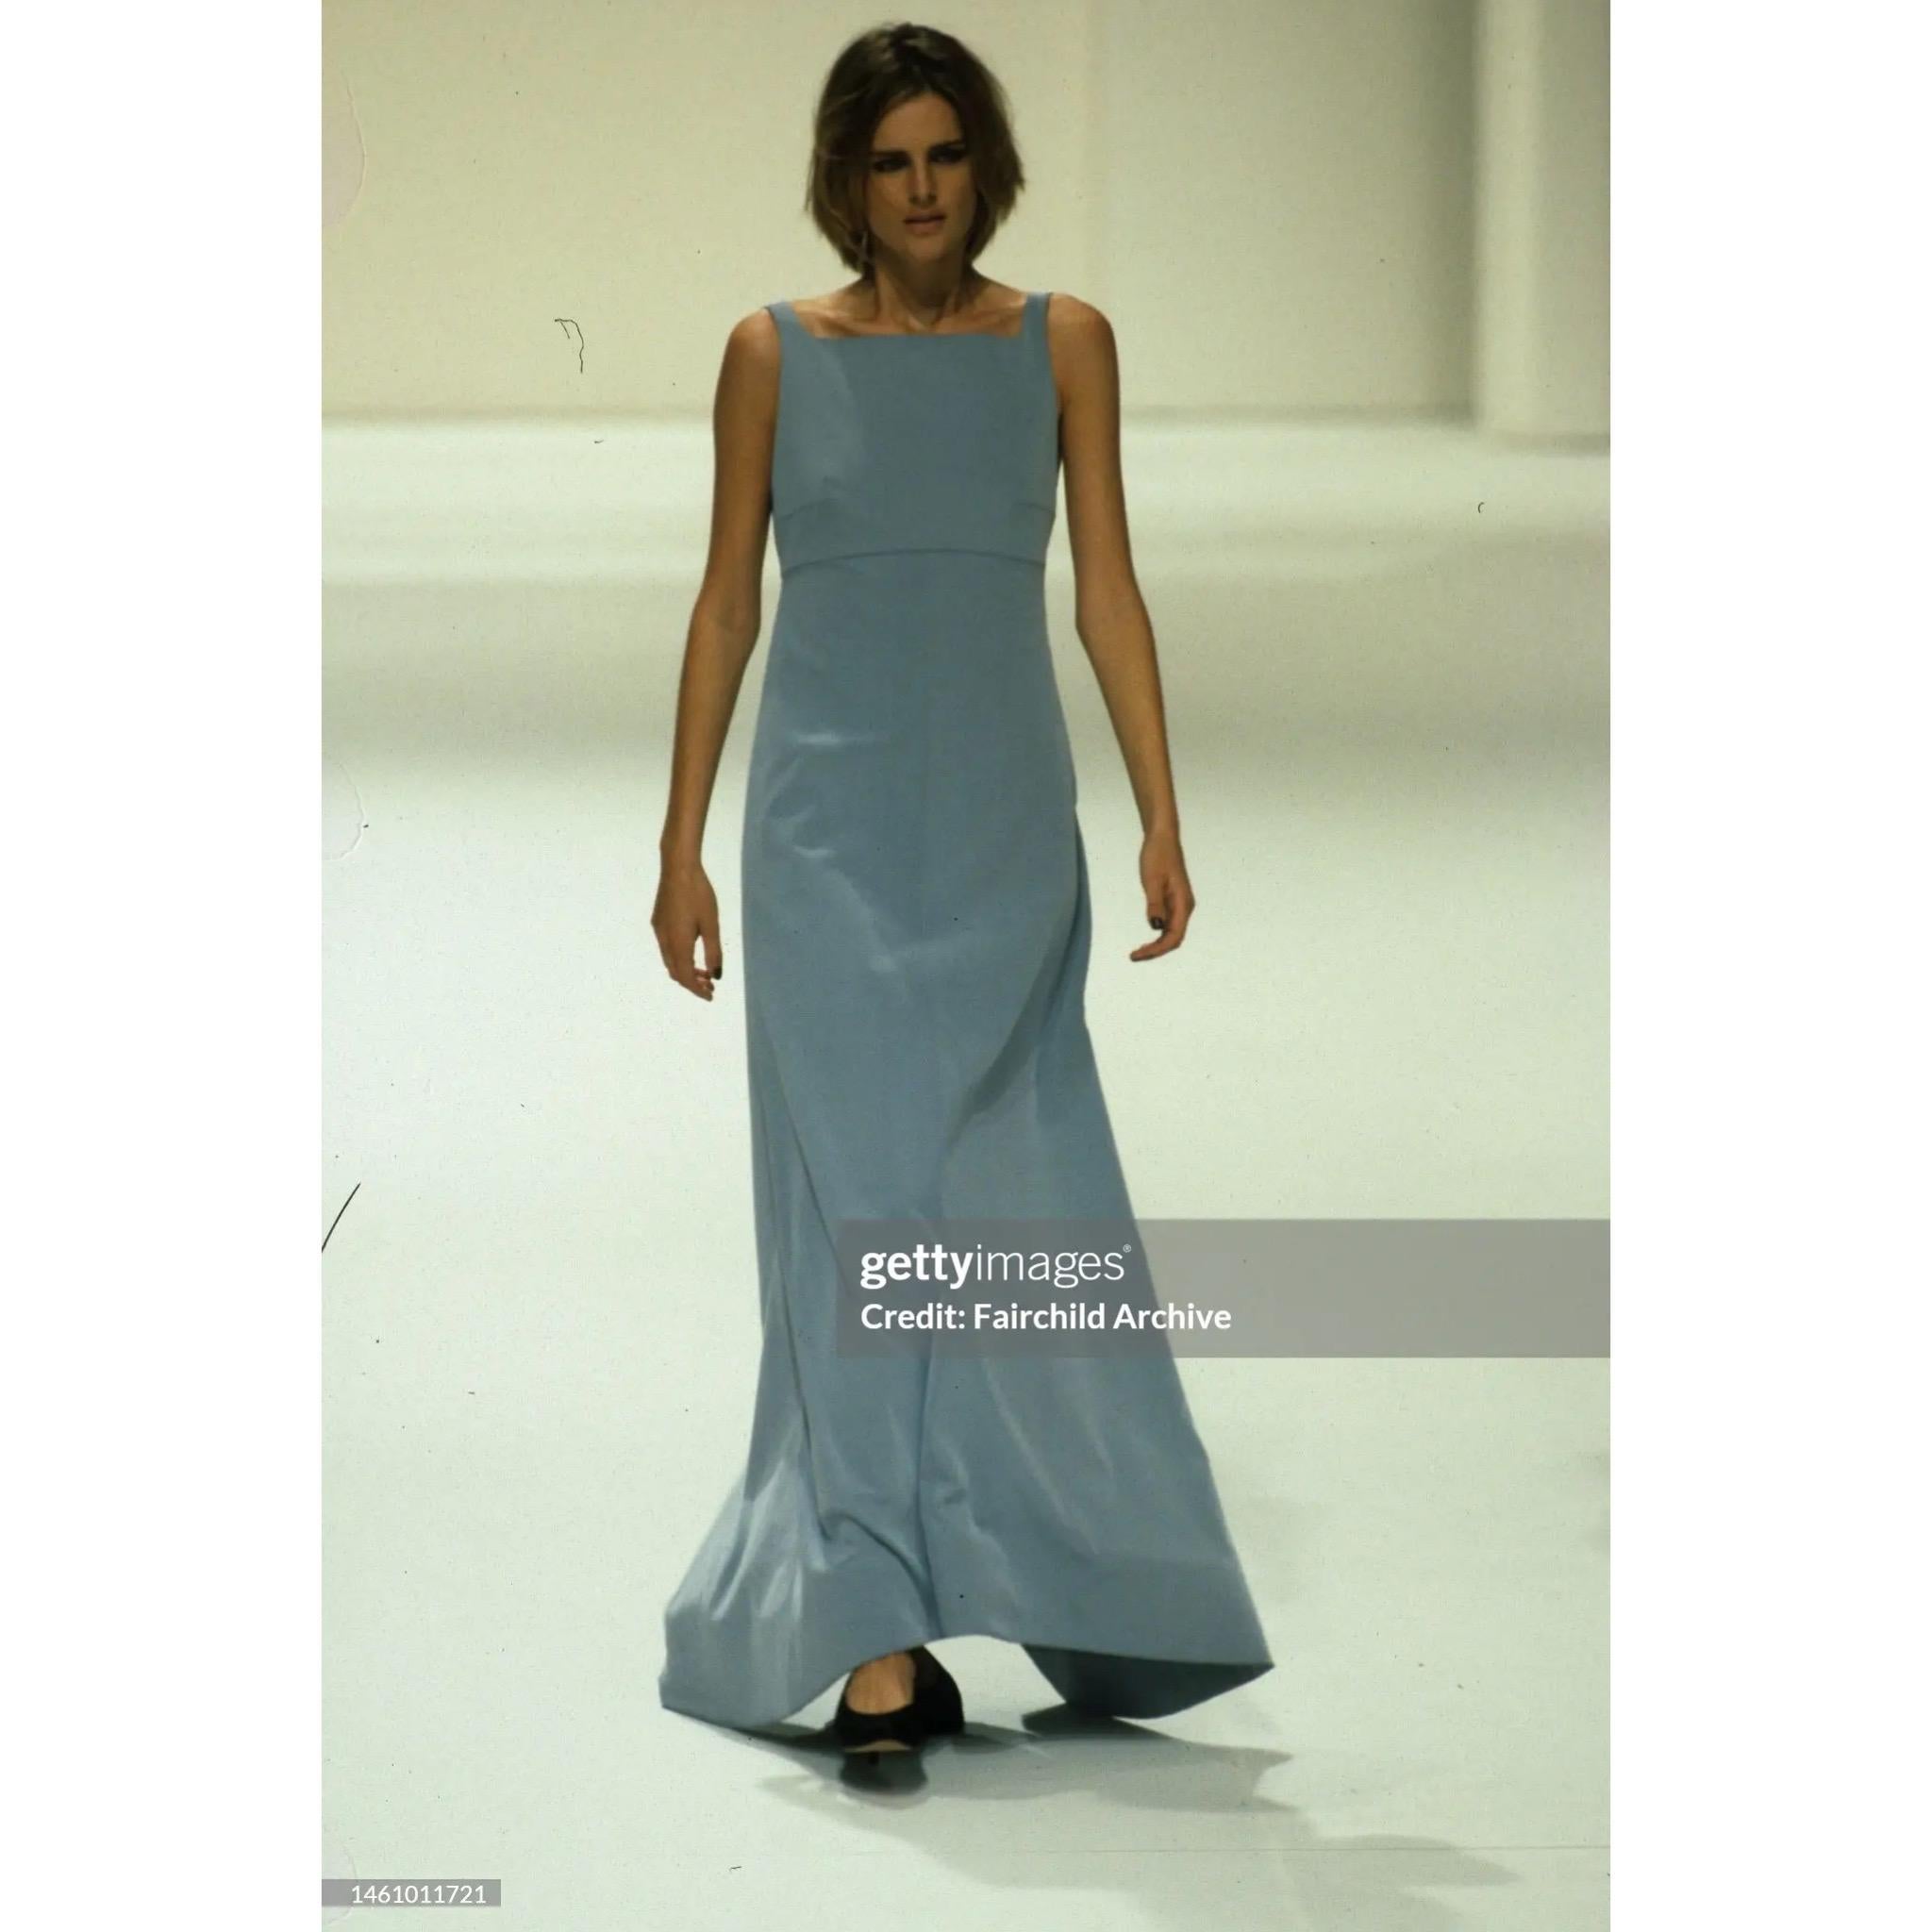 Wunderschönes graublaues Kleid von Chanel by Karl Lagerfeld mit dunkler marineblauer Schleppe aus der Frühjahr-Sommer-Kollektion 1998, wie sie in dieser Saison auf dem Laufsteg zu sehen war. 

Größe auf dem Etikett ist 40, stellen Sie sicher, um